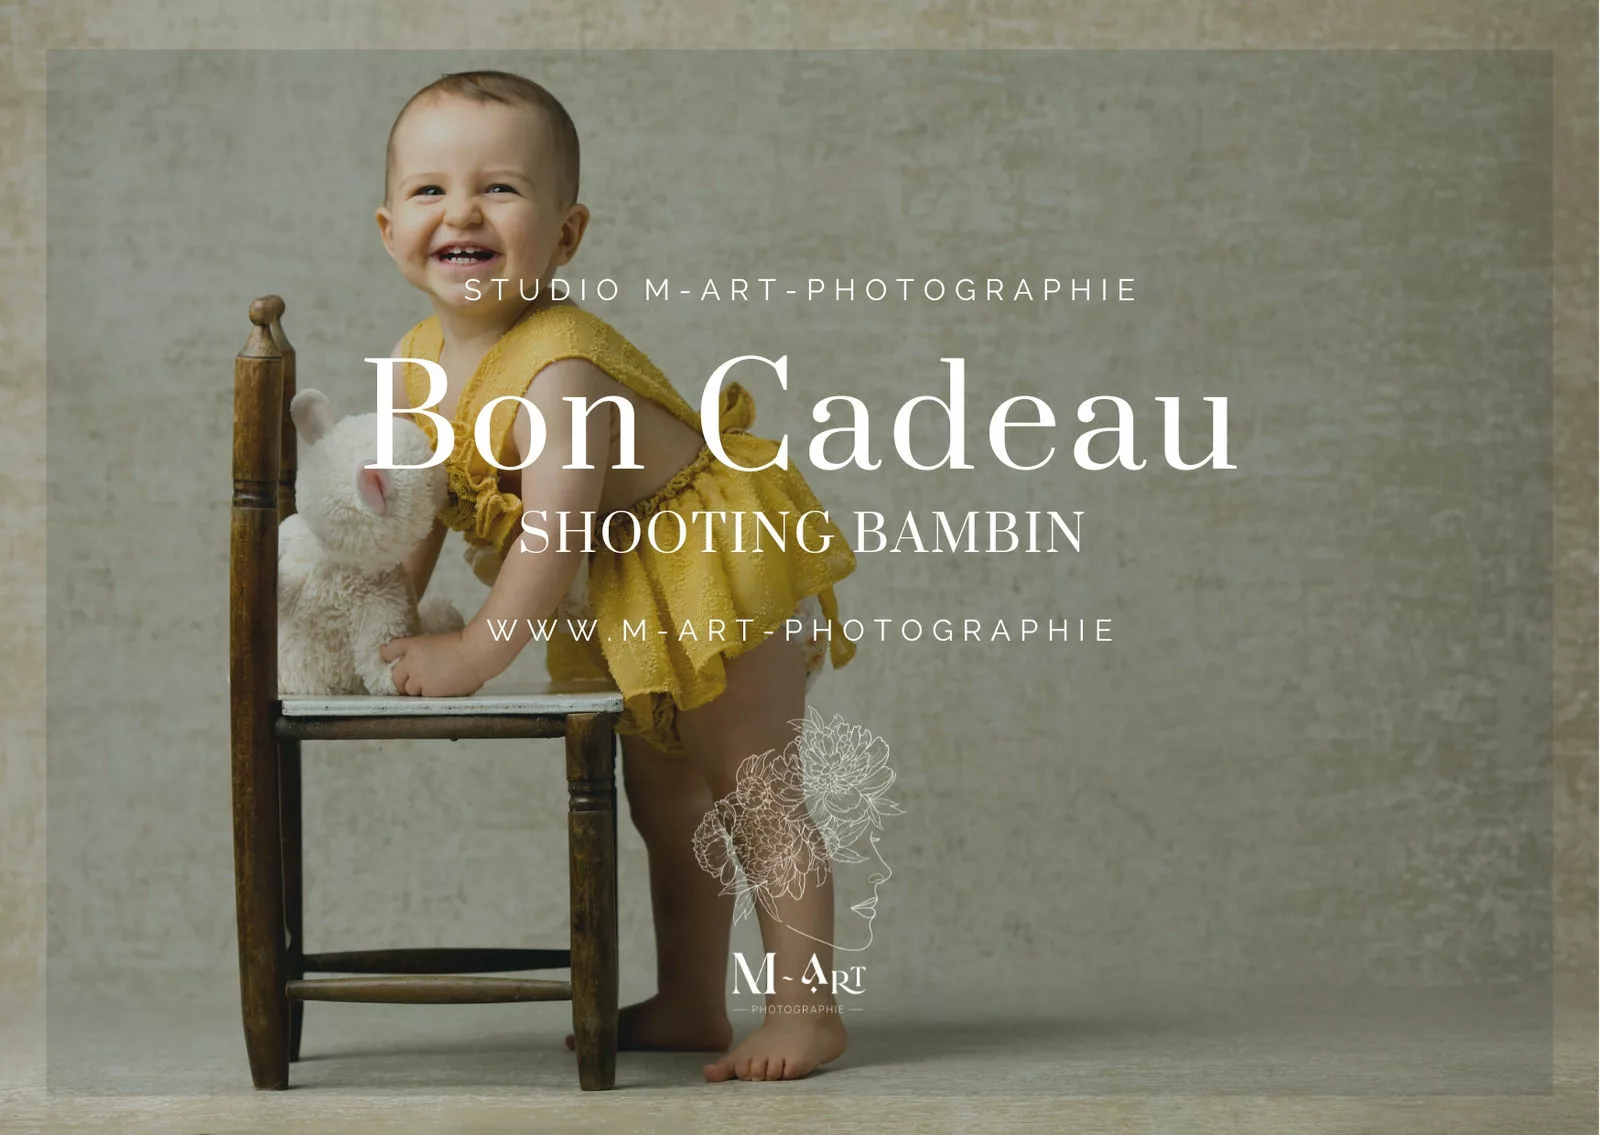 Bon cadeau photographie bambin grand bébé Lyon - Chavanoz - Rhône-Alpes. Studio avec tenues et accessoires. M-art-photographie.